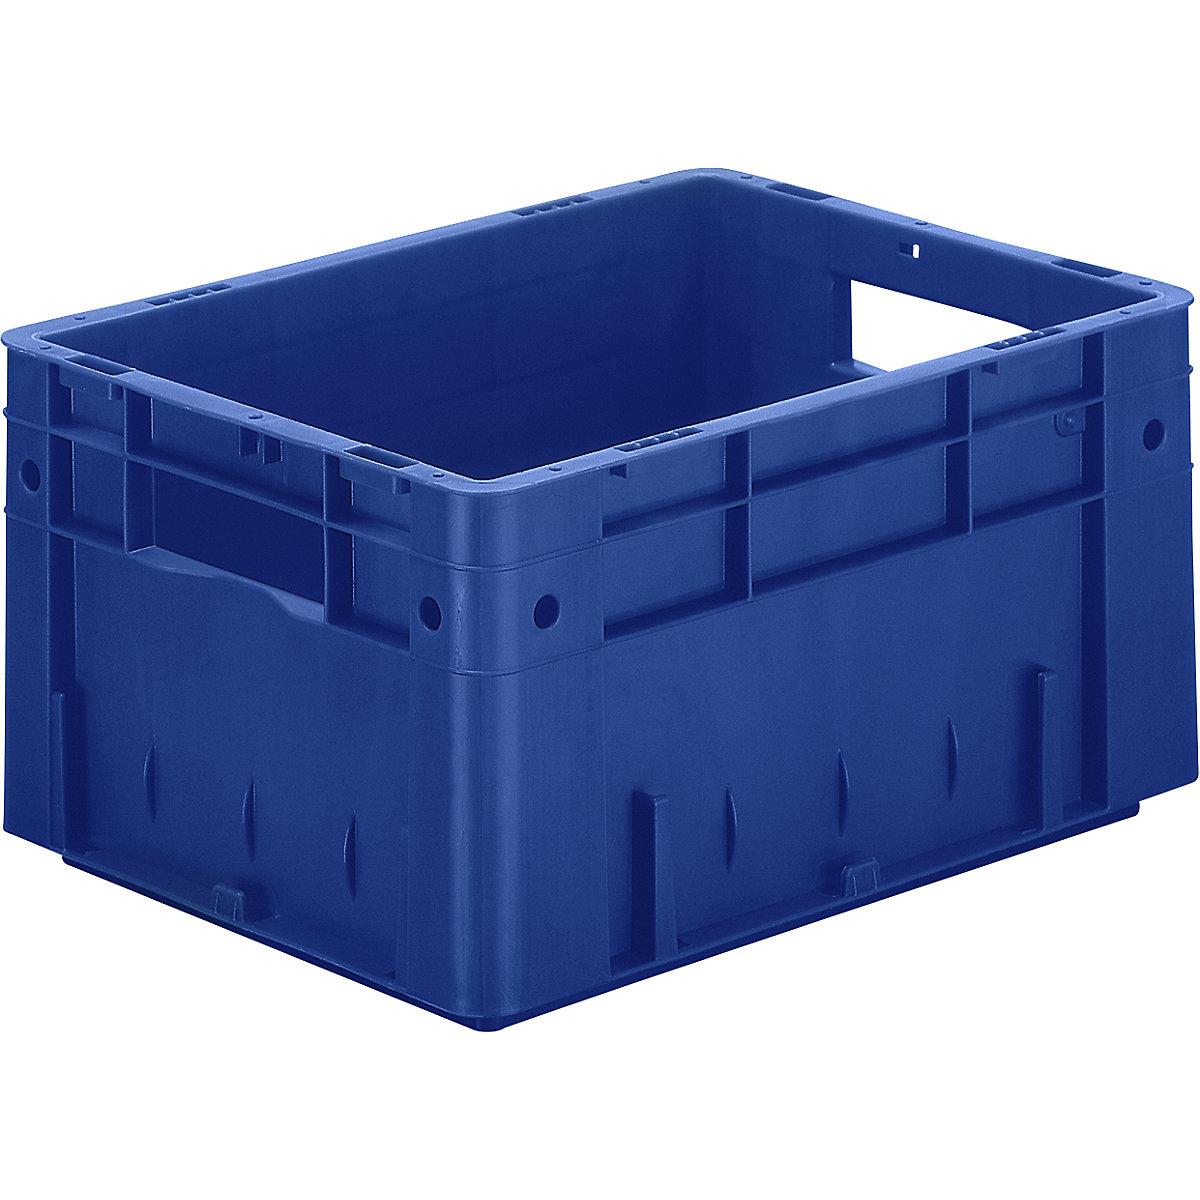 Euro-prepravka na ťažký náklad, polypropylén, objem 17,5 l, d x š x v 400 x 300 x 210 mm, steny uzatvorené, dno uzatvorené, modrá, OJ 4 ks-4